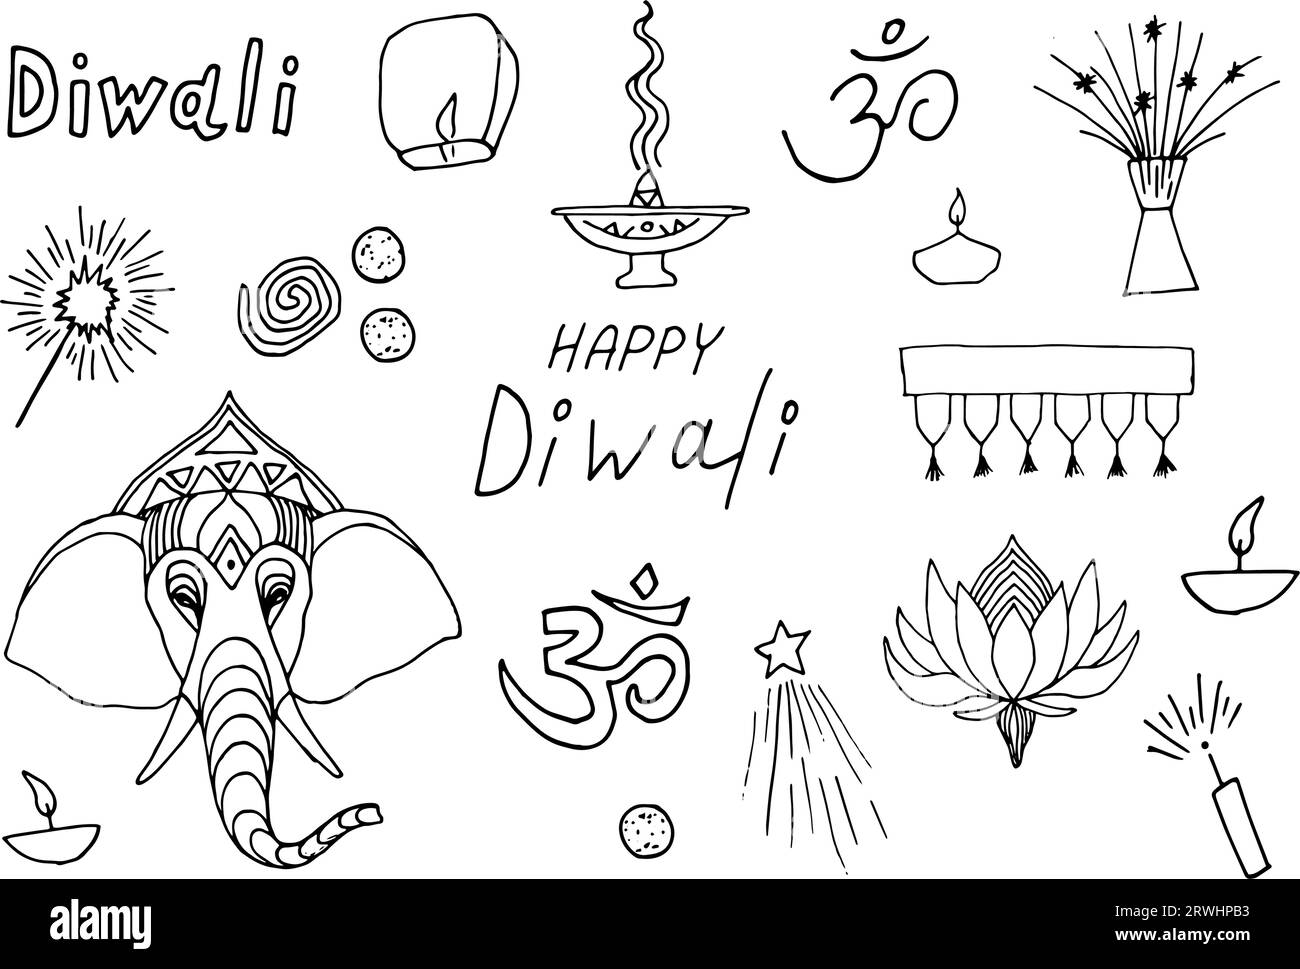 Buon Diwali. Collezione di doodling del festival indiano. Vari oggetti da festeggiare. Grafica disegnata a mano Illustrazione Vettoriale